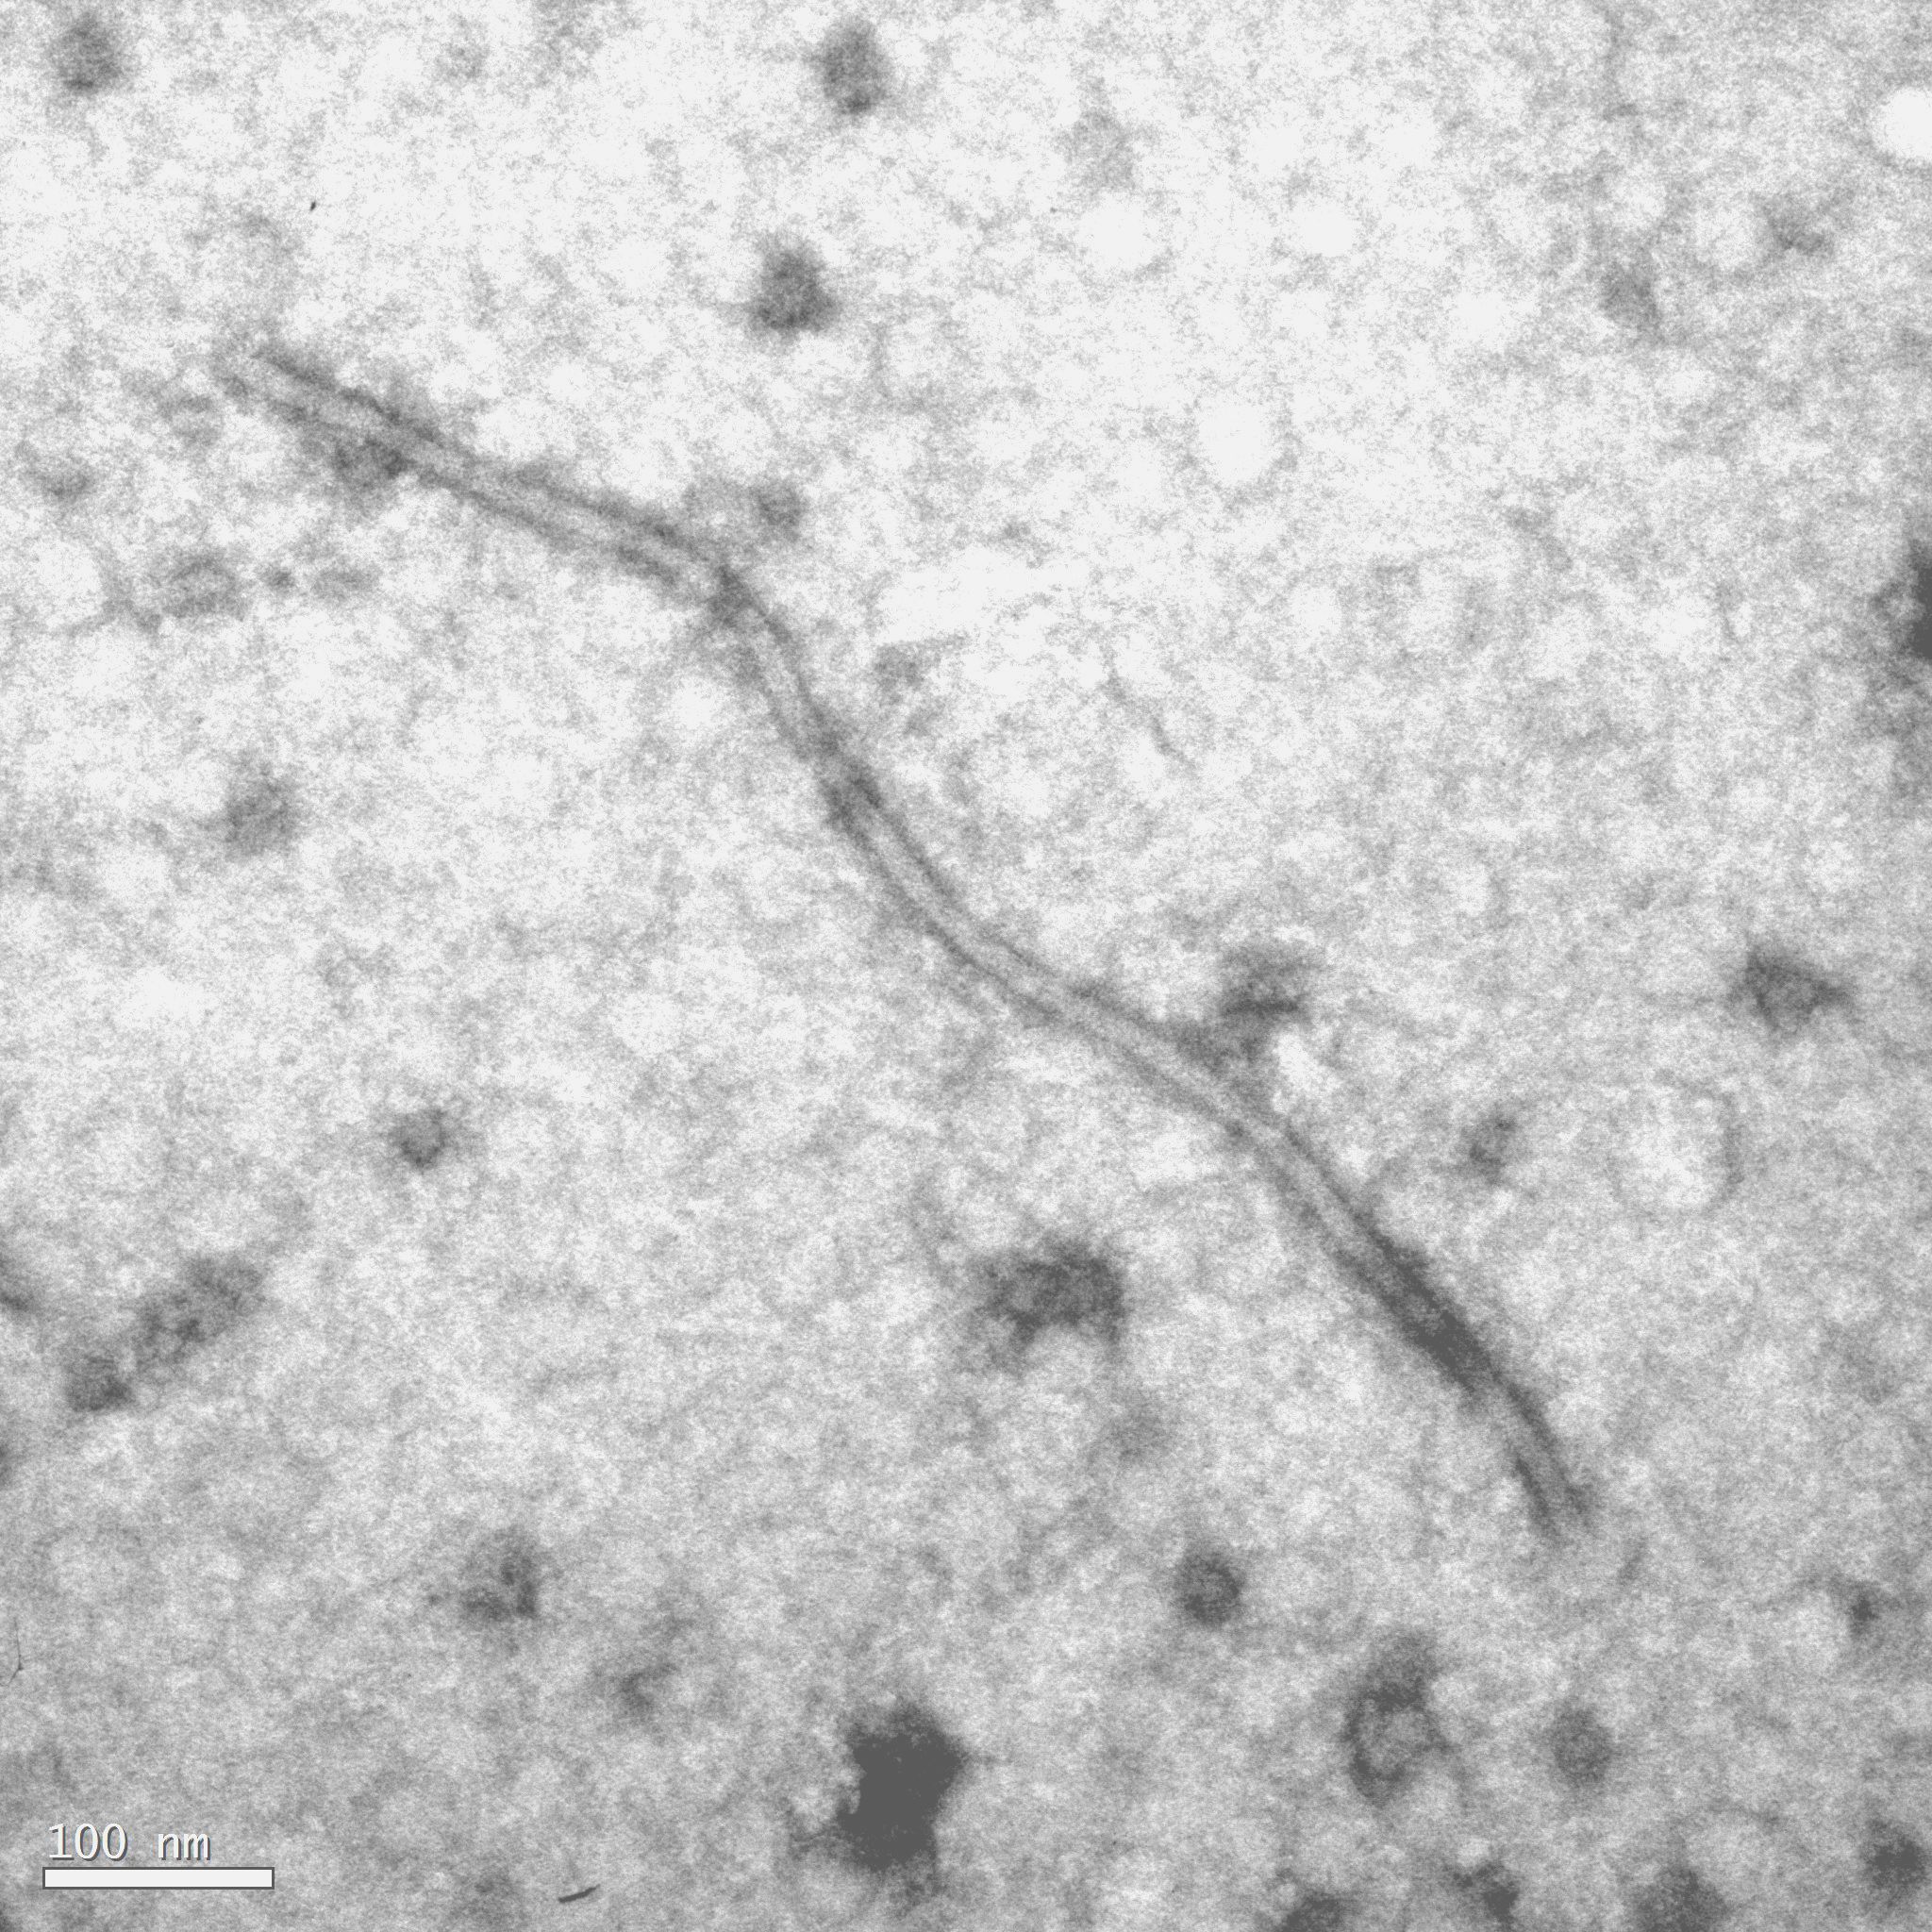 <p><b><p>Micrografia eletrônica a partir de preparação de extrato de flor (leaf-dip) de gloriosa, mostrando partícula viral alongado-flexuosa com cerca de 800 nm de comprimento. </p></b></p><p>Autor: E.W. Kitajima</p>